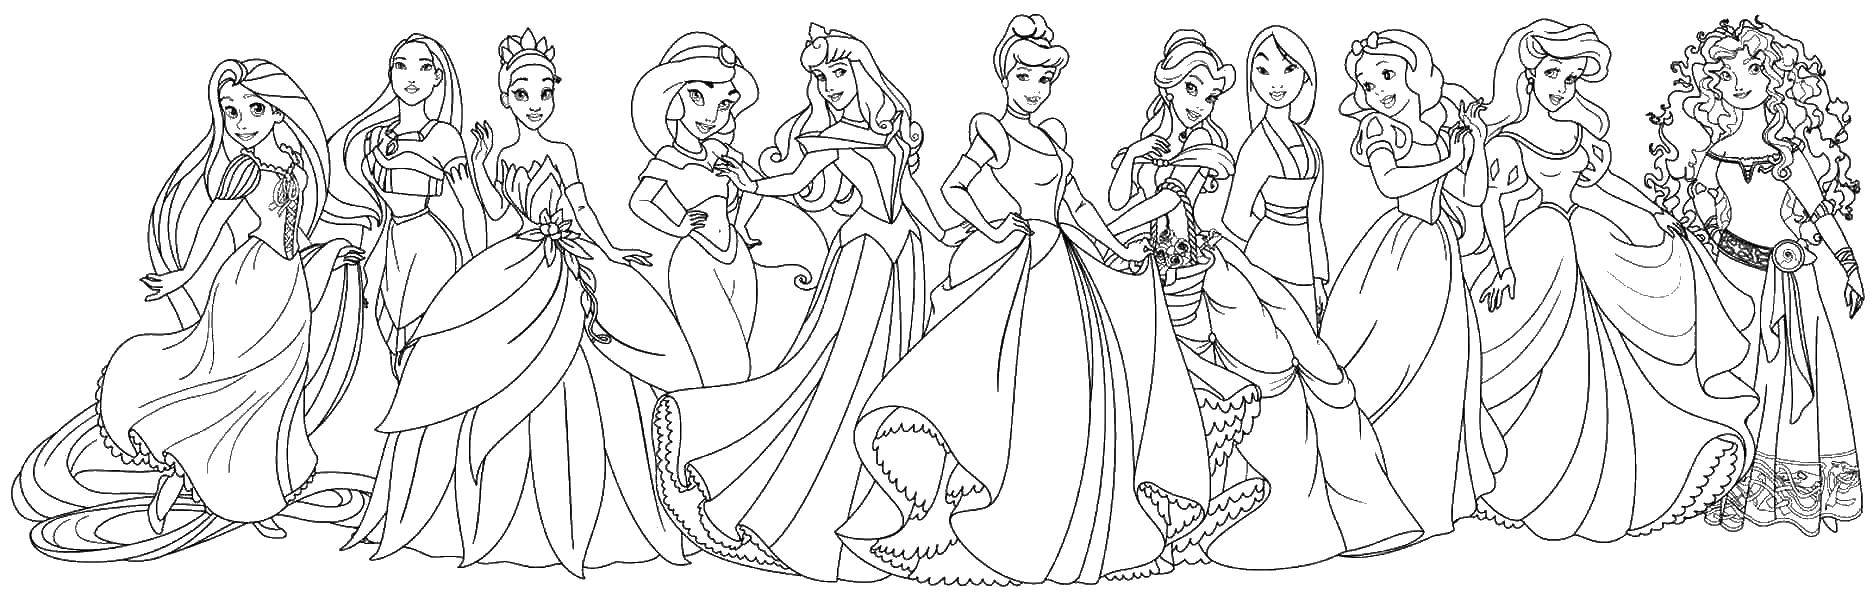 Название: Раскраска Разные принцессы. Категория: Принцессы. Теги: принцессы, мультфильмы, сказки.